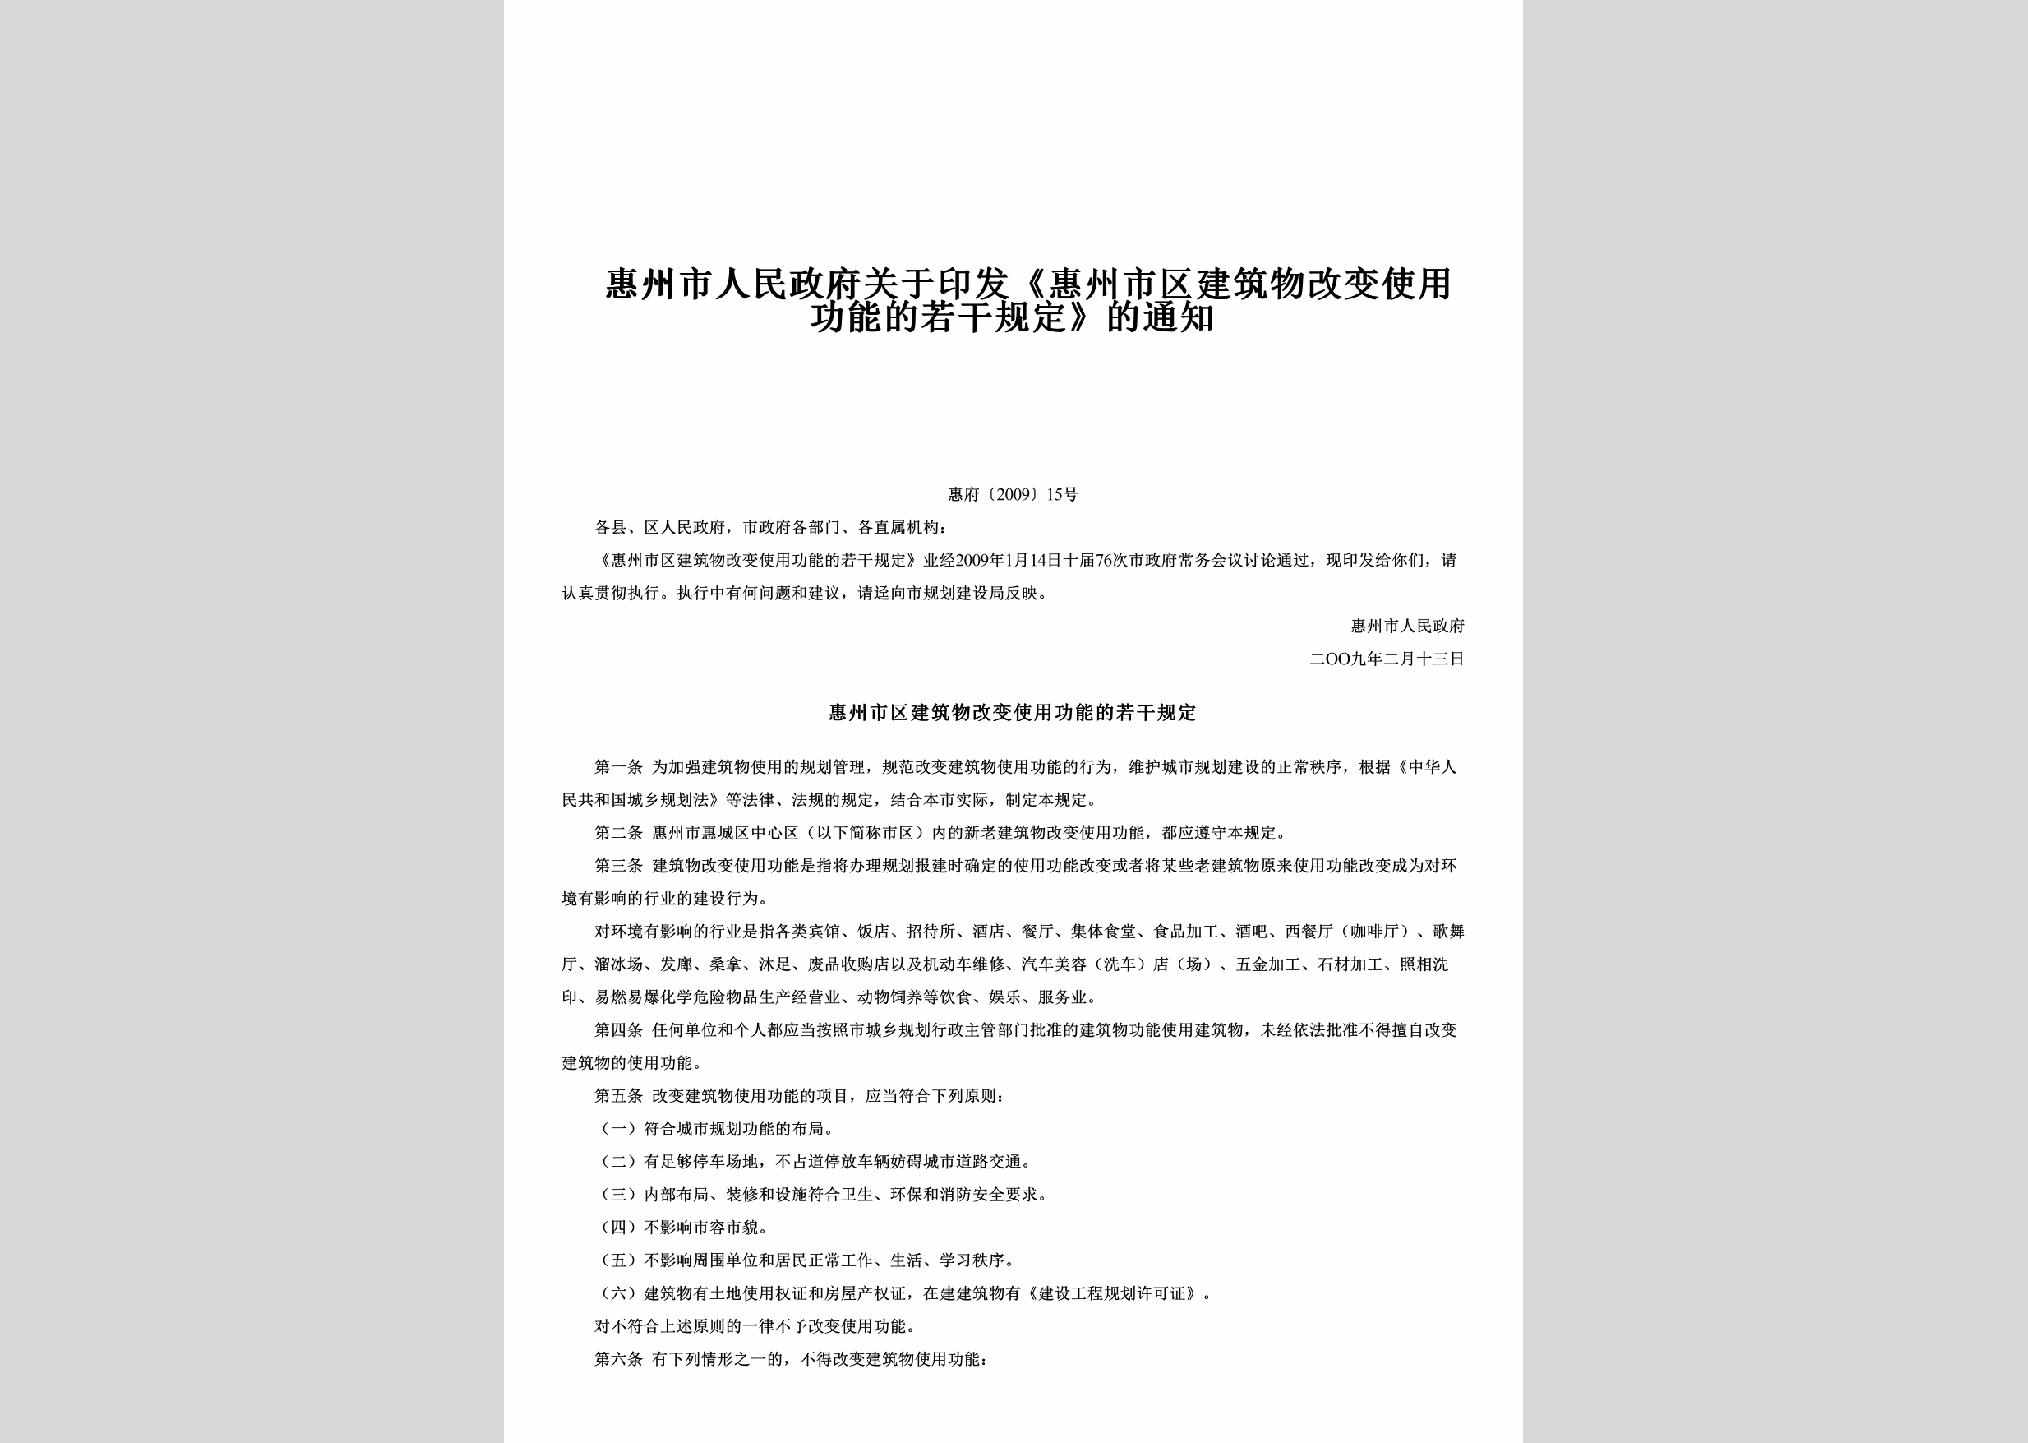 惠府[2009]15号：关于印发《惠州市区建筑物改变使用功能的若干规定》的通知